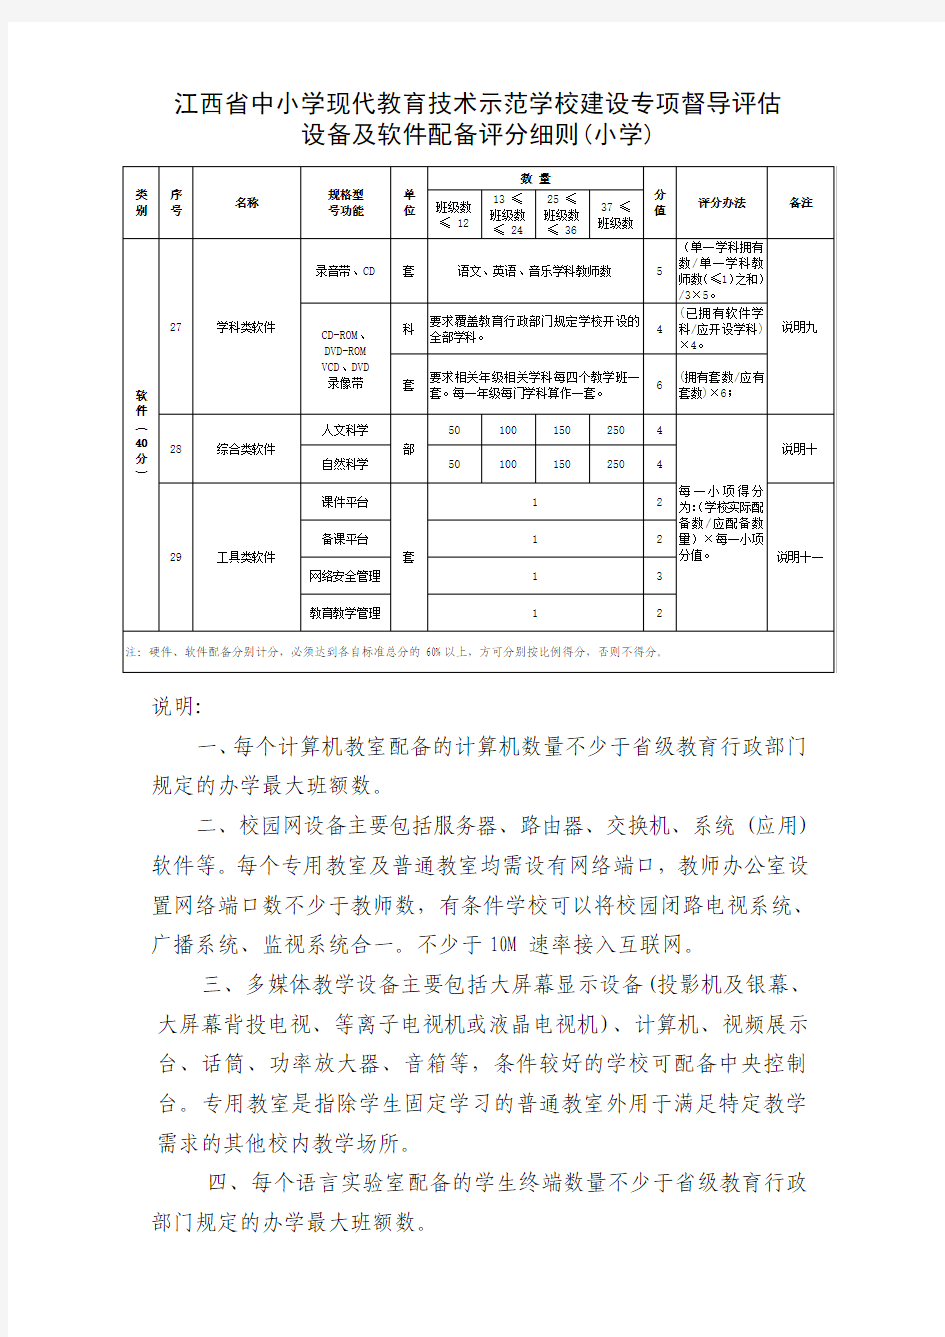 江西省中小学现代教育技术示范学校建设督导 评估设备及软件配备评分细则